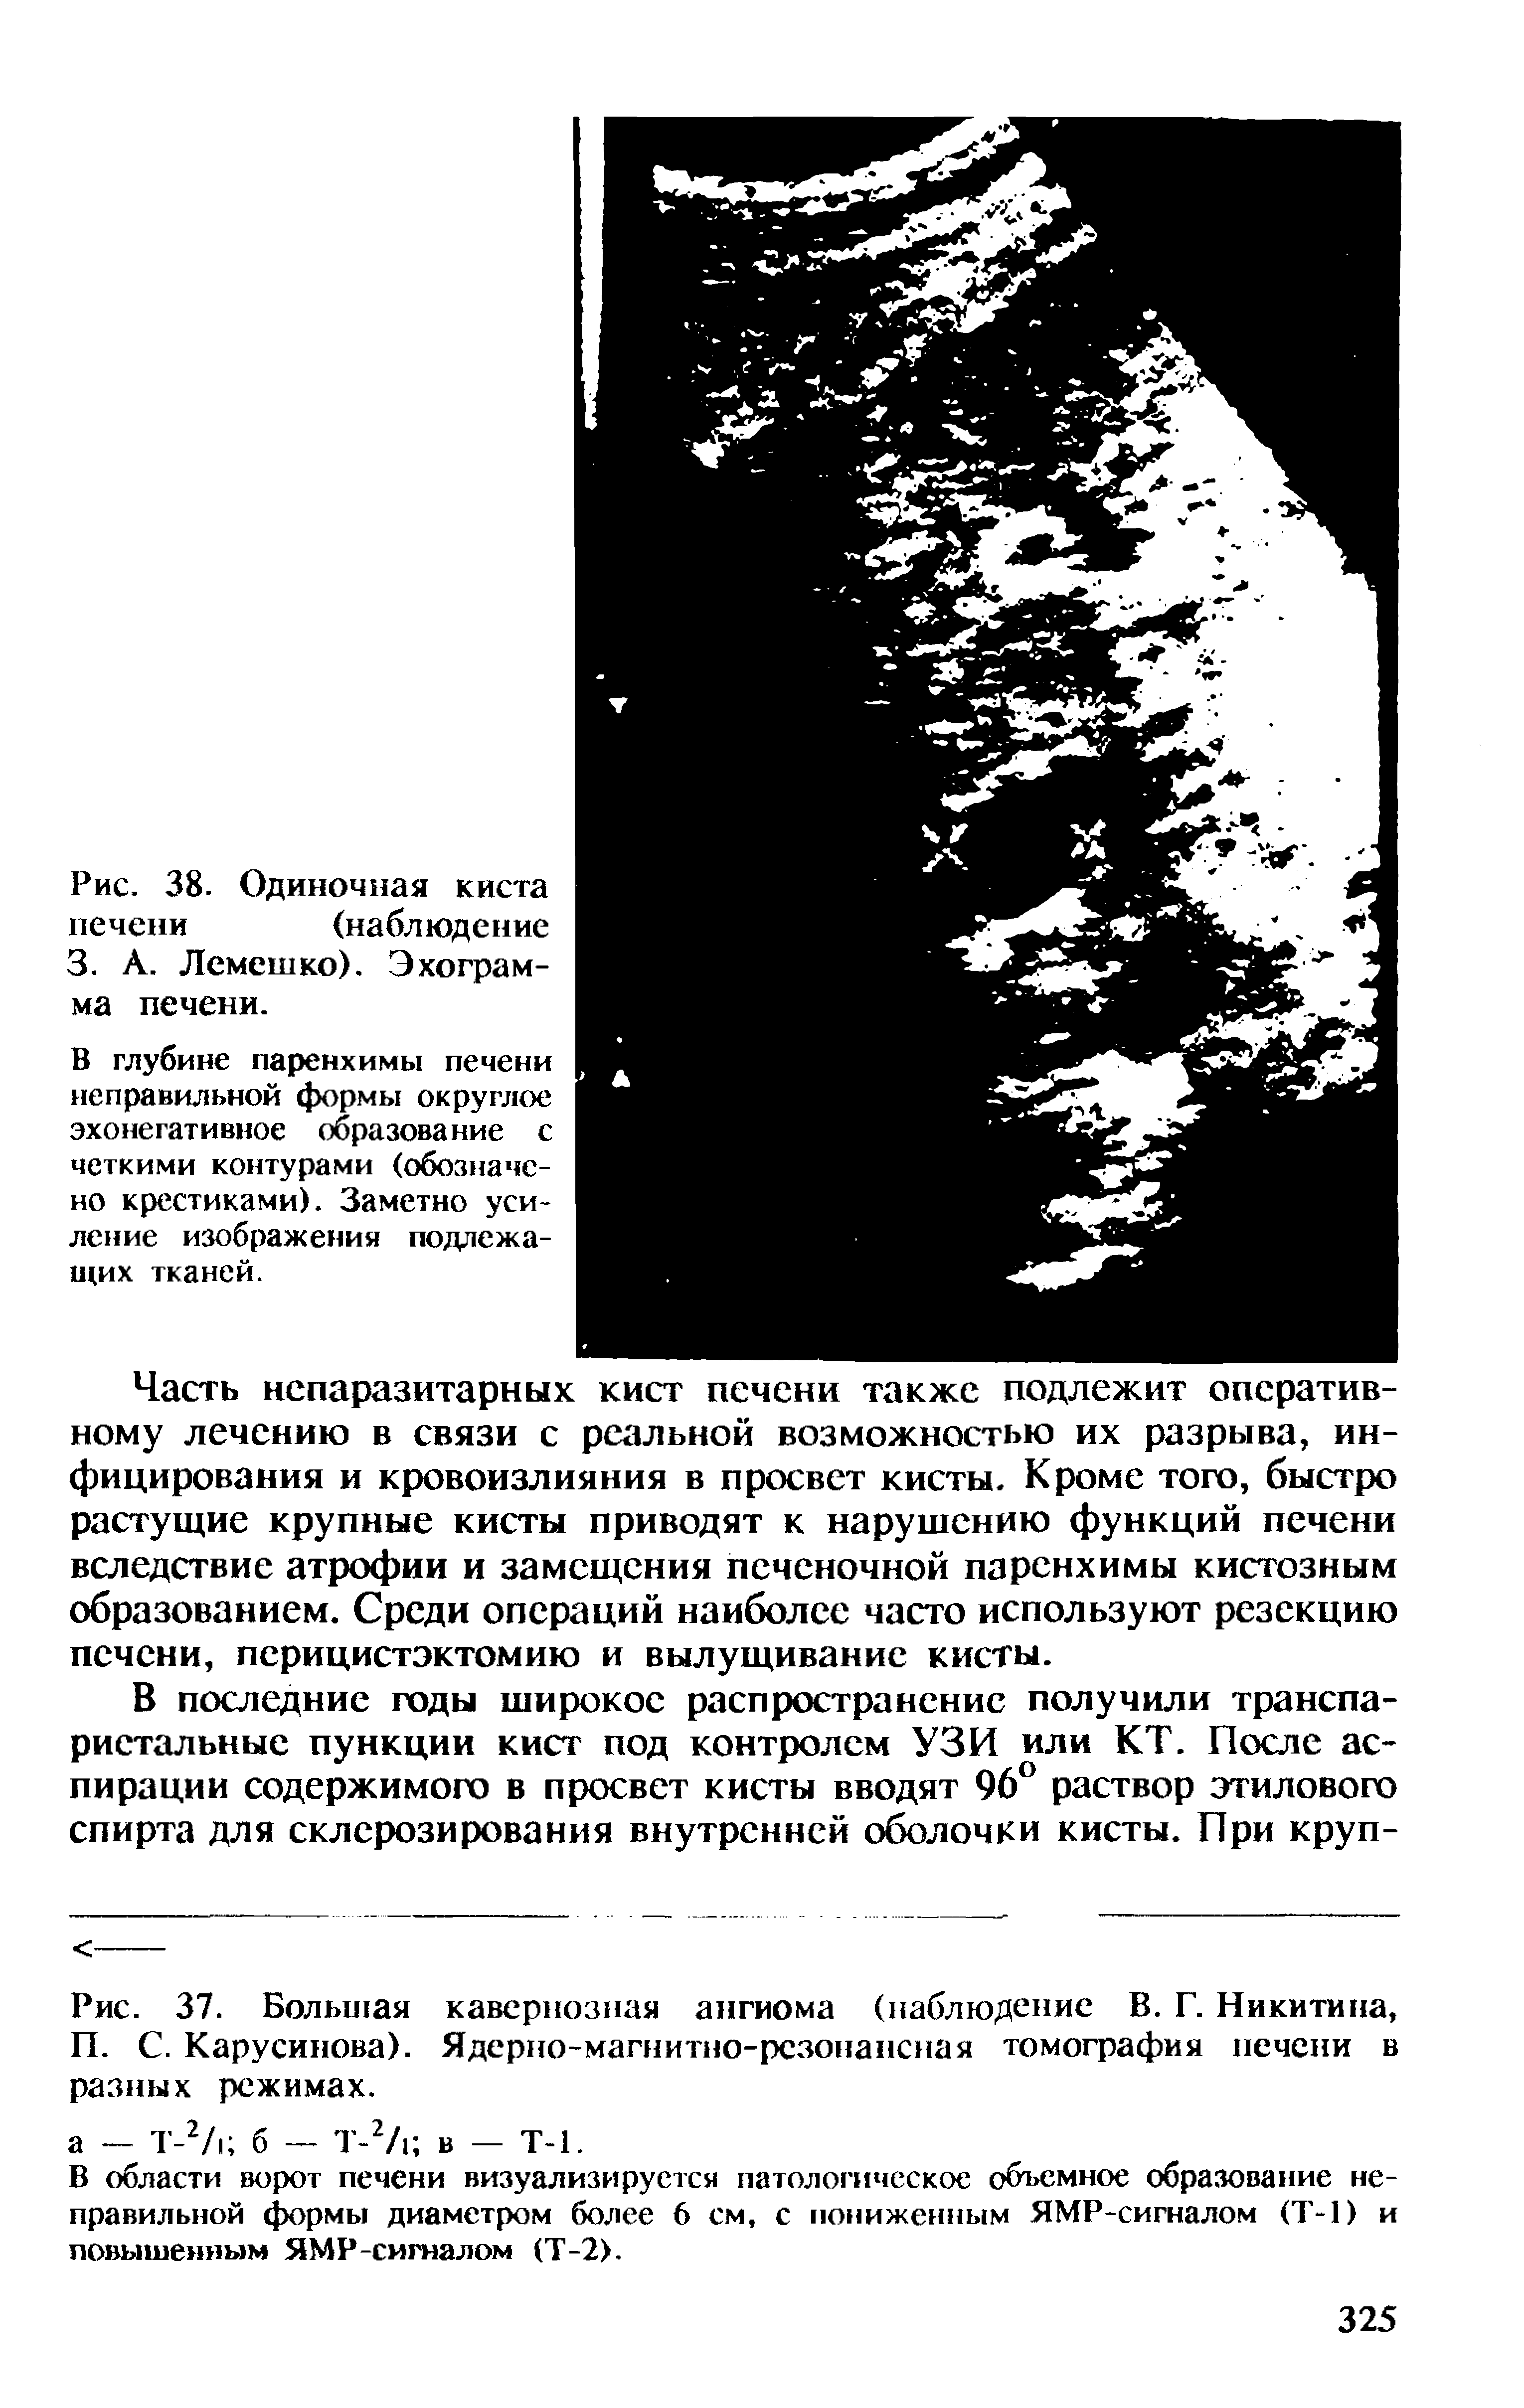 Рис. 37. Большая кавернозная ангиома (наблюдение В. Г. Никитина, П. С. Карусинова). Ядерно-магнитно-рсзонансная томография печени в разных режимах.